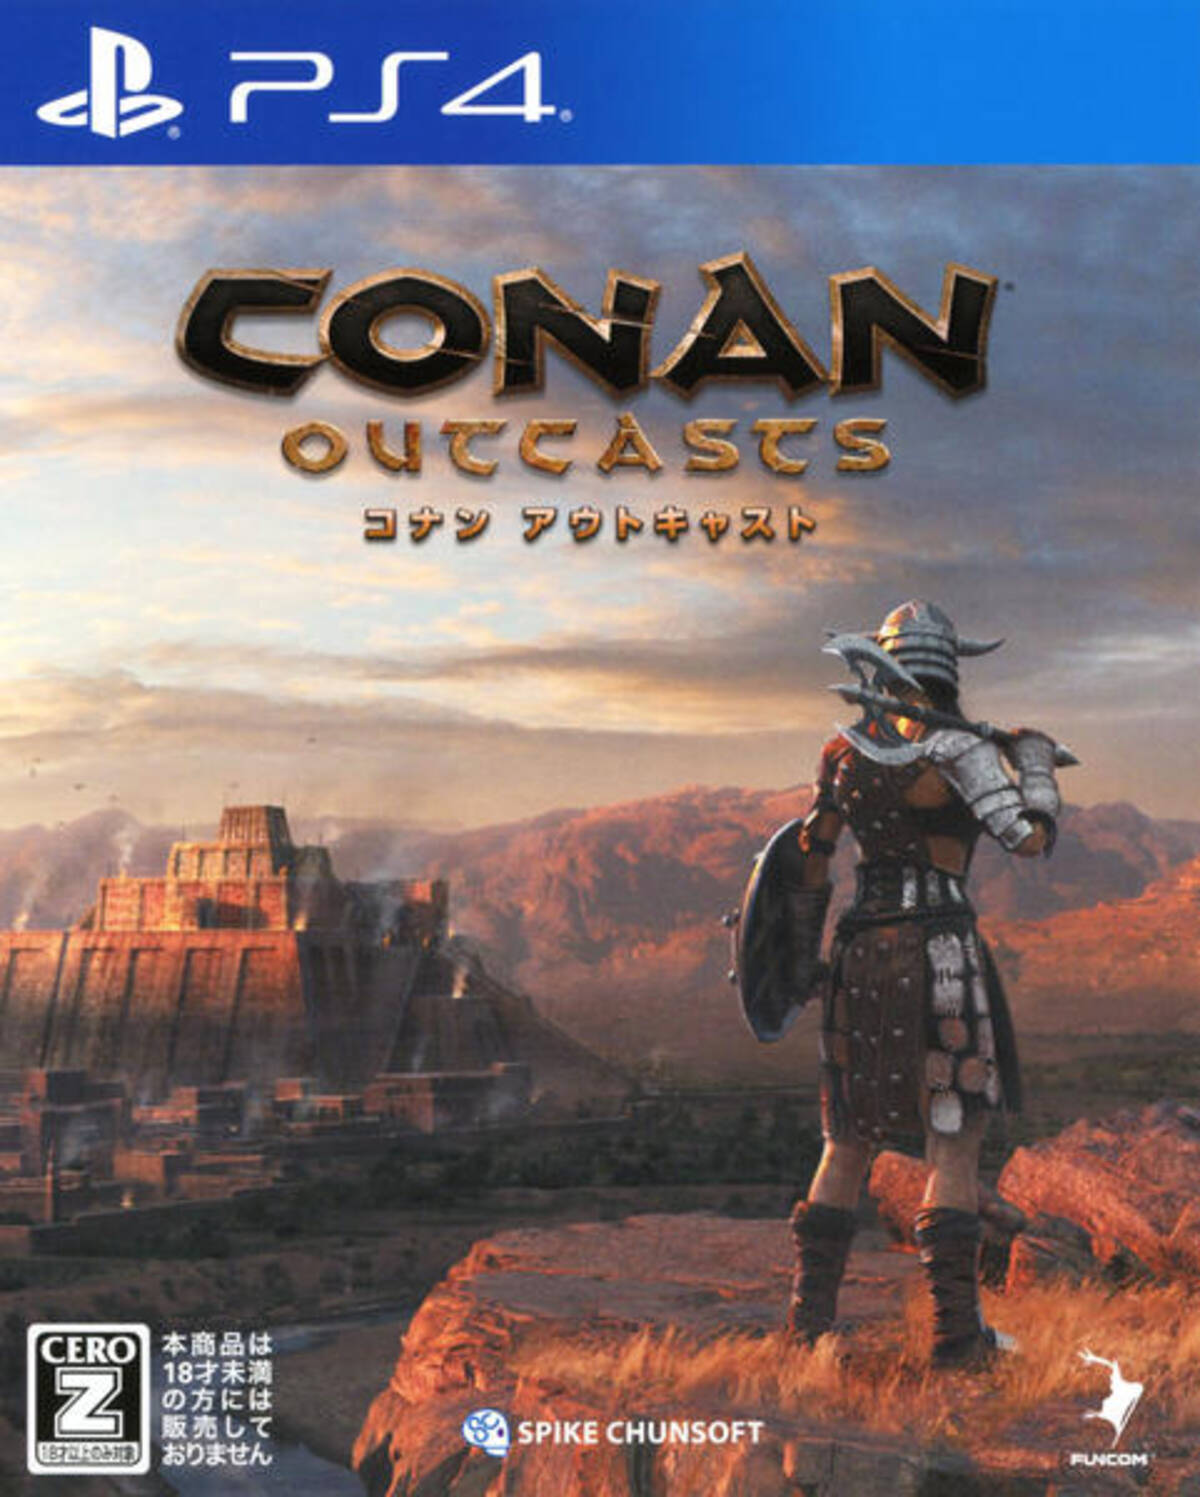 これだけは知っておきたい Conan Outcasts コナン アウトキャスト の裏技 テクニックまとめ 18年10月3日 エキサイトニュース